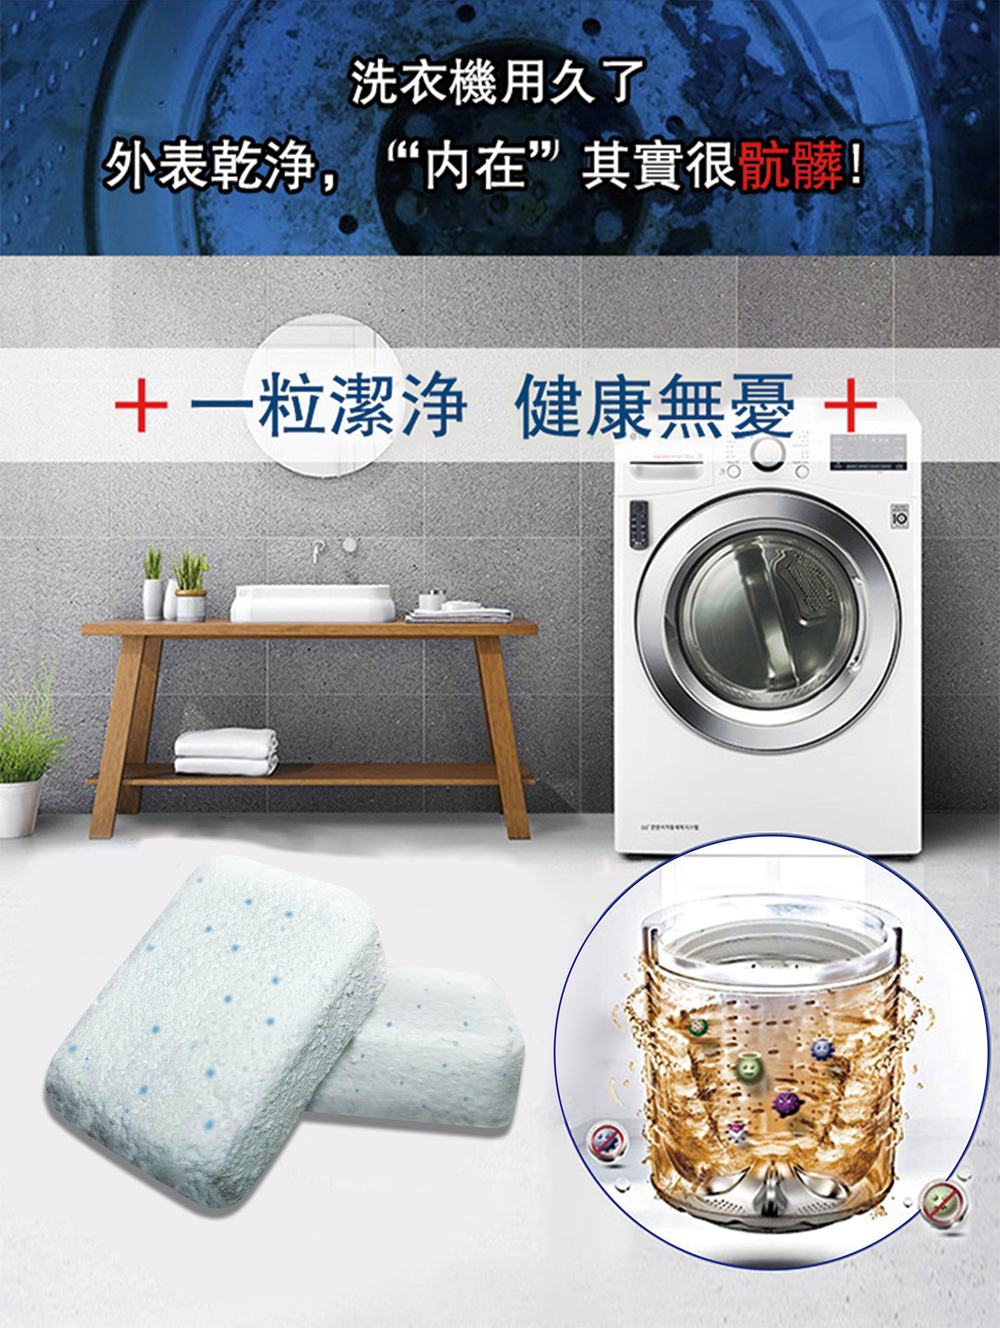 【德國domol】洗衣機槽濃縮清潔錠(10錠/包)適用直立式洗衣機/滾筒式洗衣機